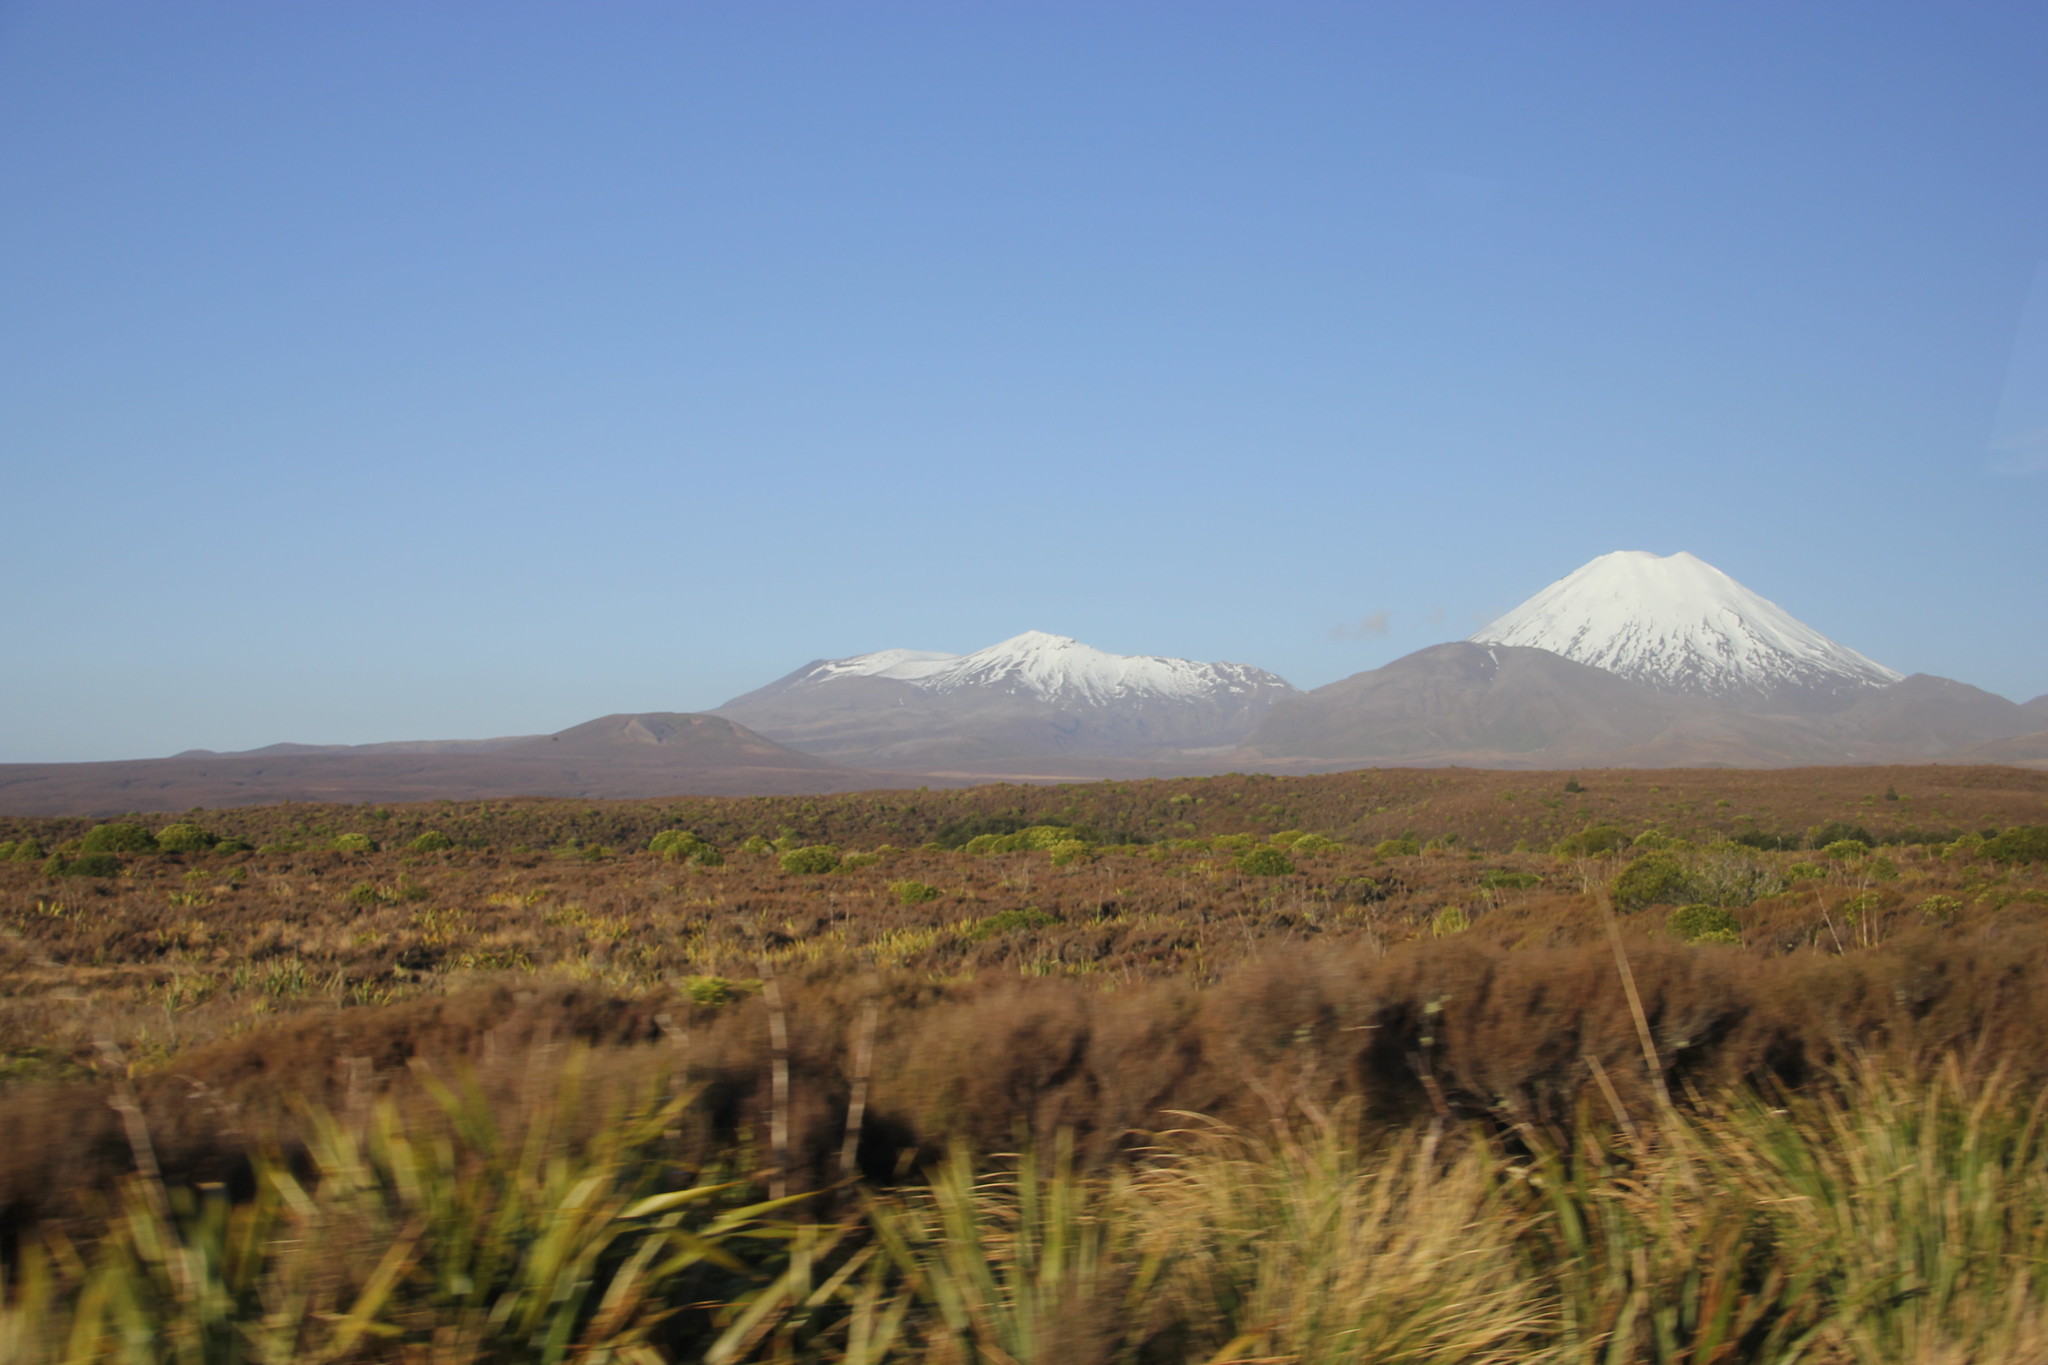 Nueva Zelanda, Aotearoa: El viaje de mi vida por la Tierra Media - Blogs de Nueva Zelanda - Día 8 - 7/10/15 - Piopio y Tongariro National Park (88)